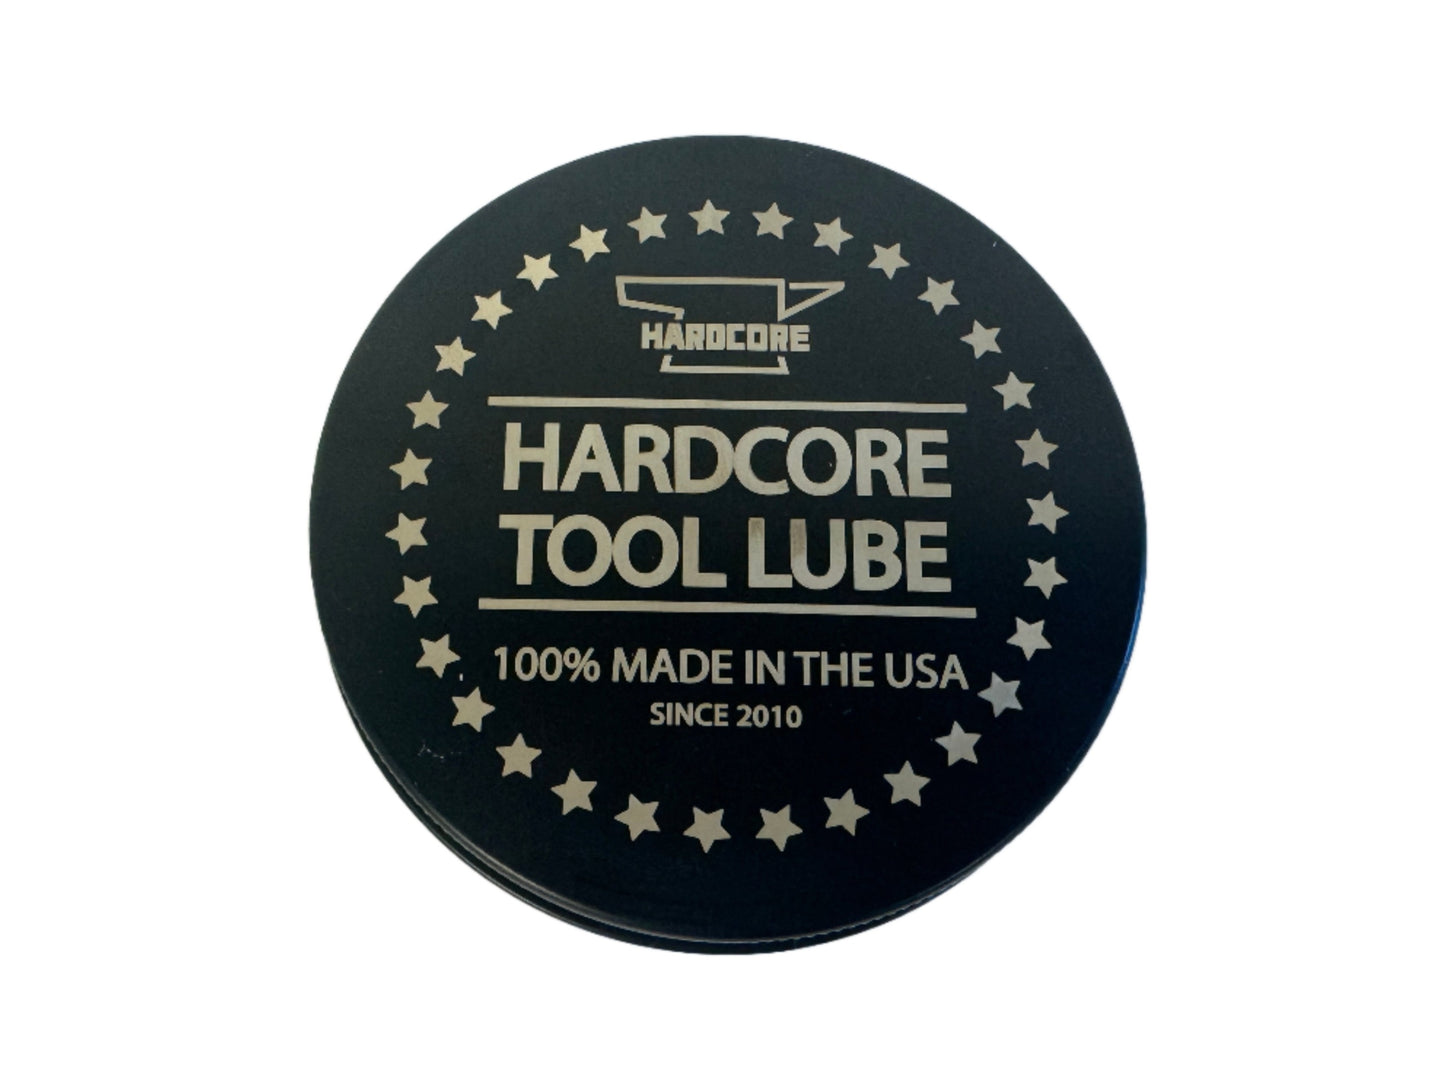 Hardcore Tool Lube